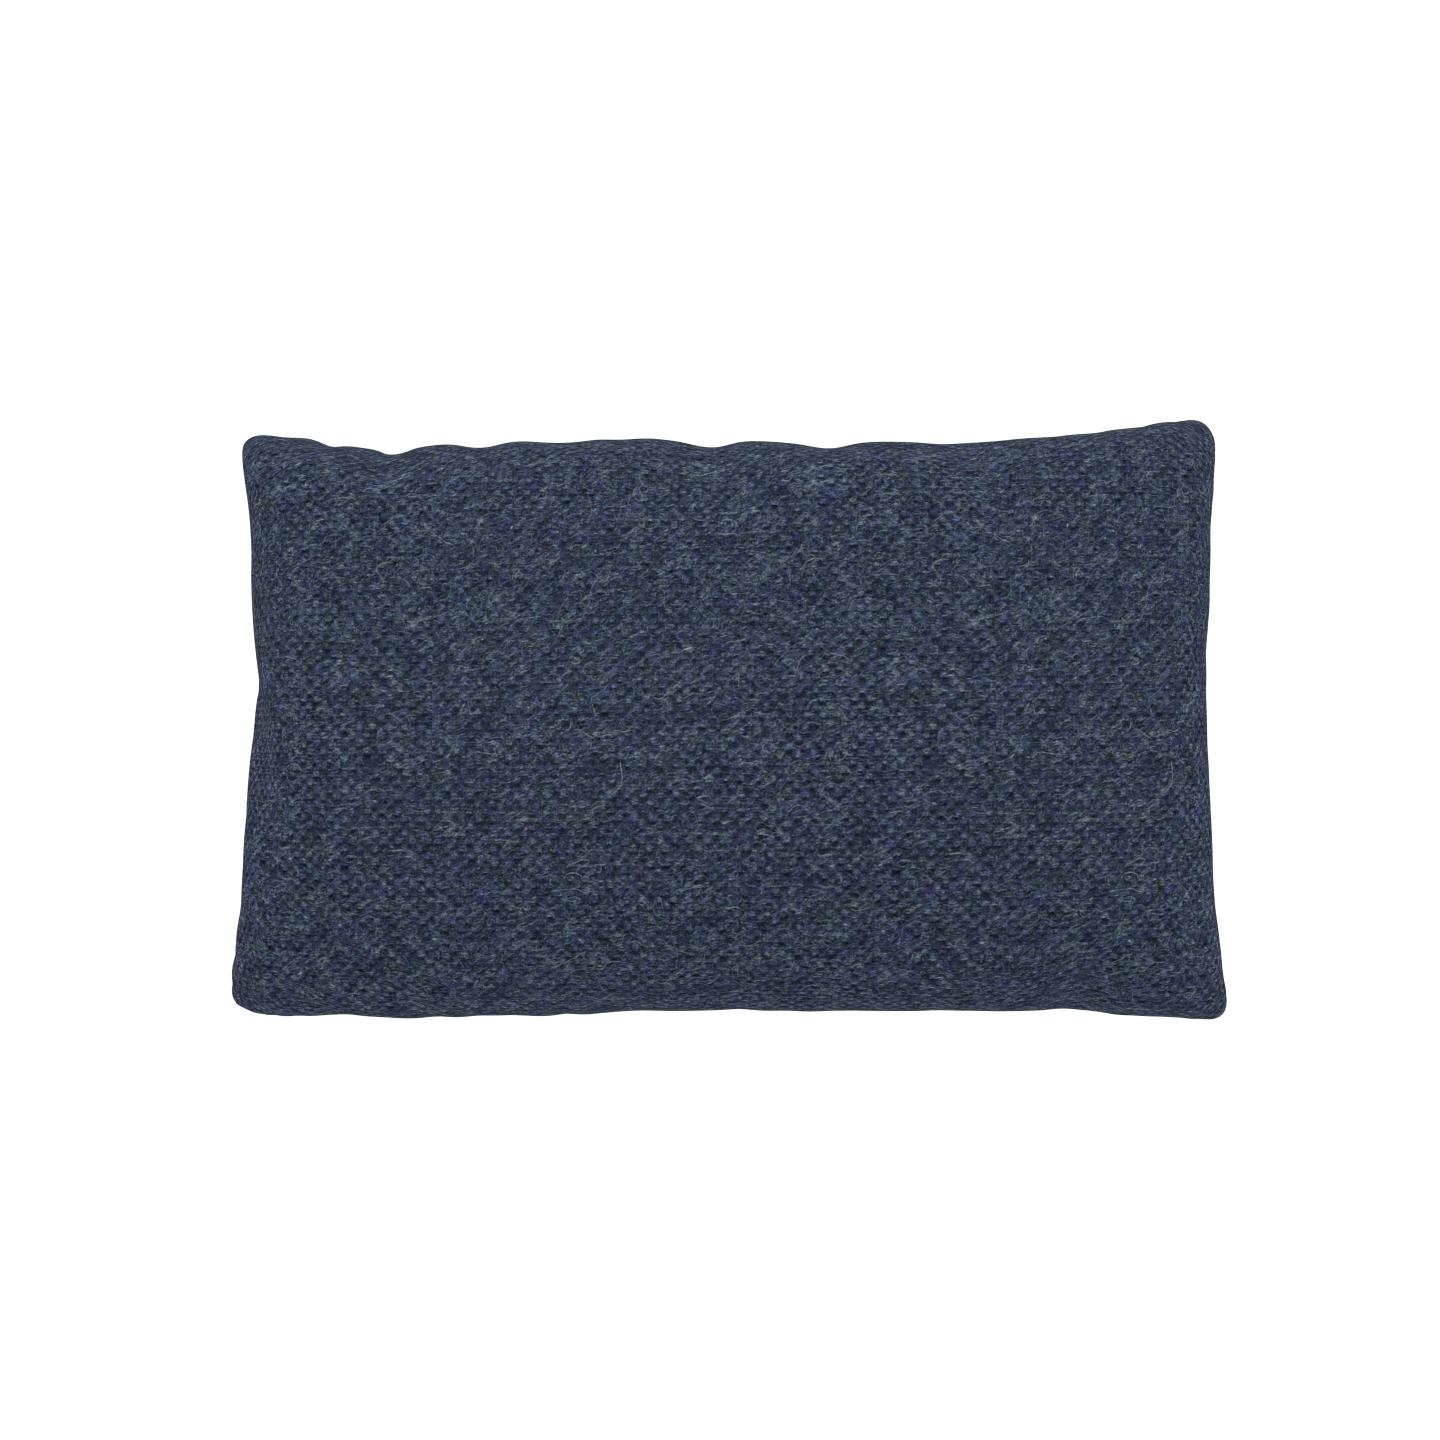 MYCS Coussin Bleu Denim - 30x50 cm - Housse en Laine chinée. Coussin de canapé moelleux